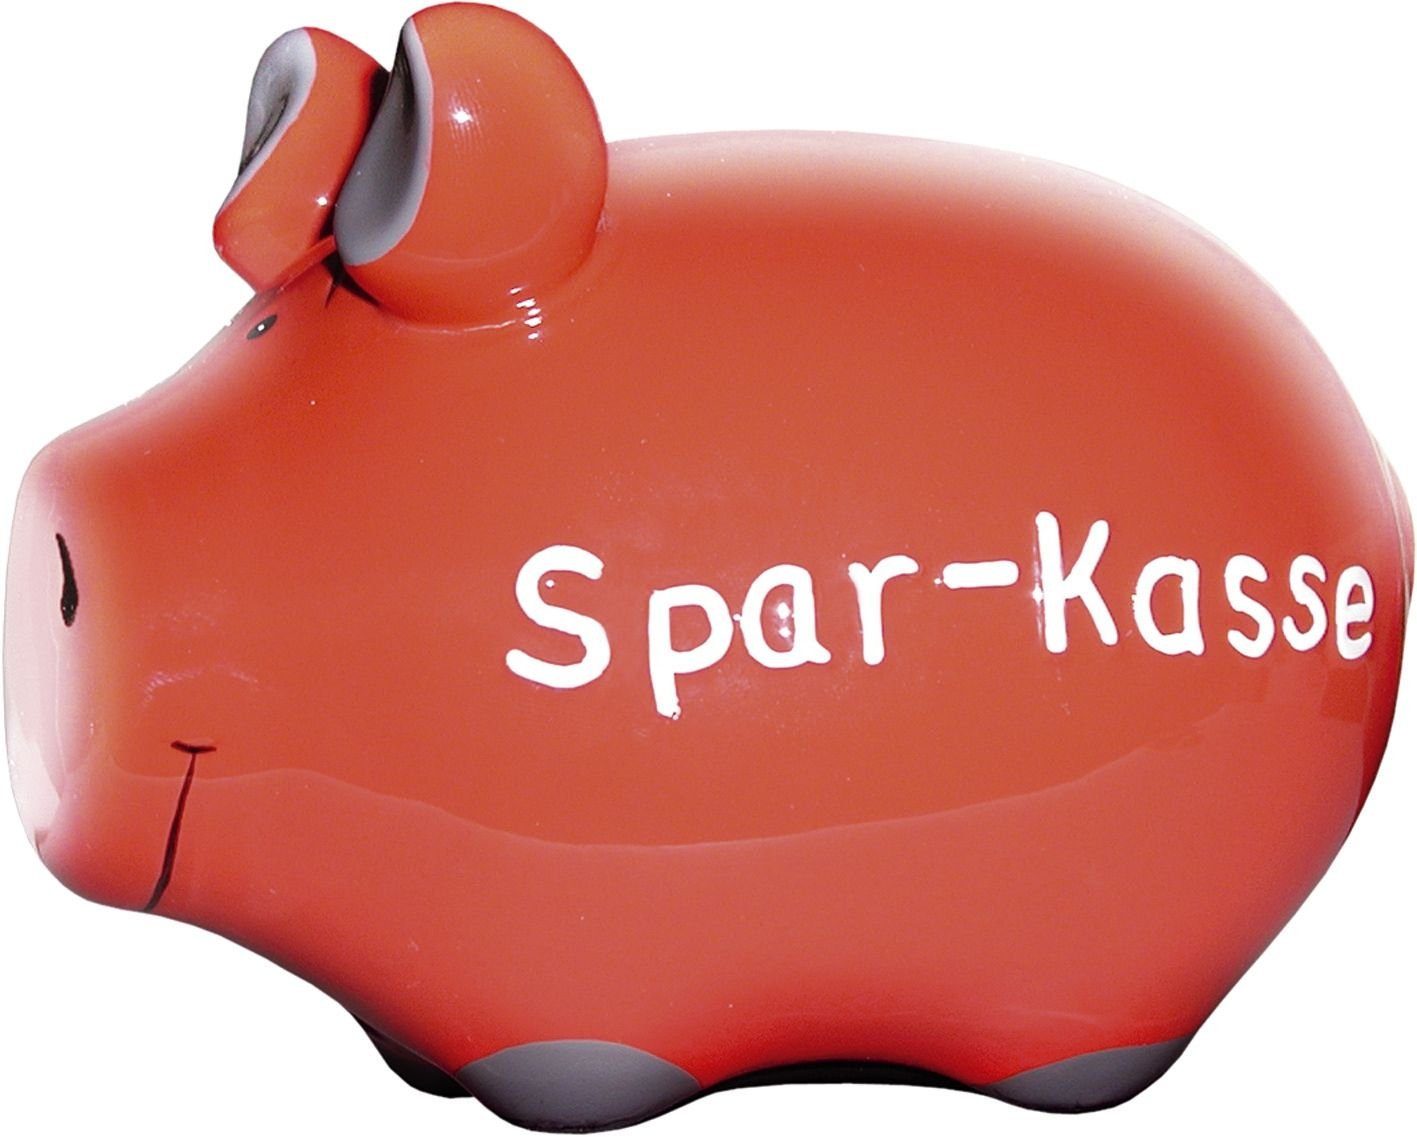 KCG Spardose Schwein klein Keramik, "Spar-Kasse" - Klemmen